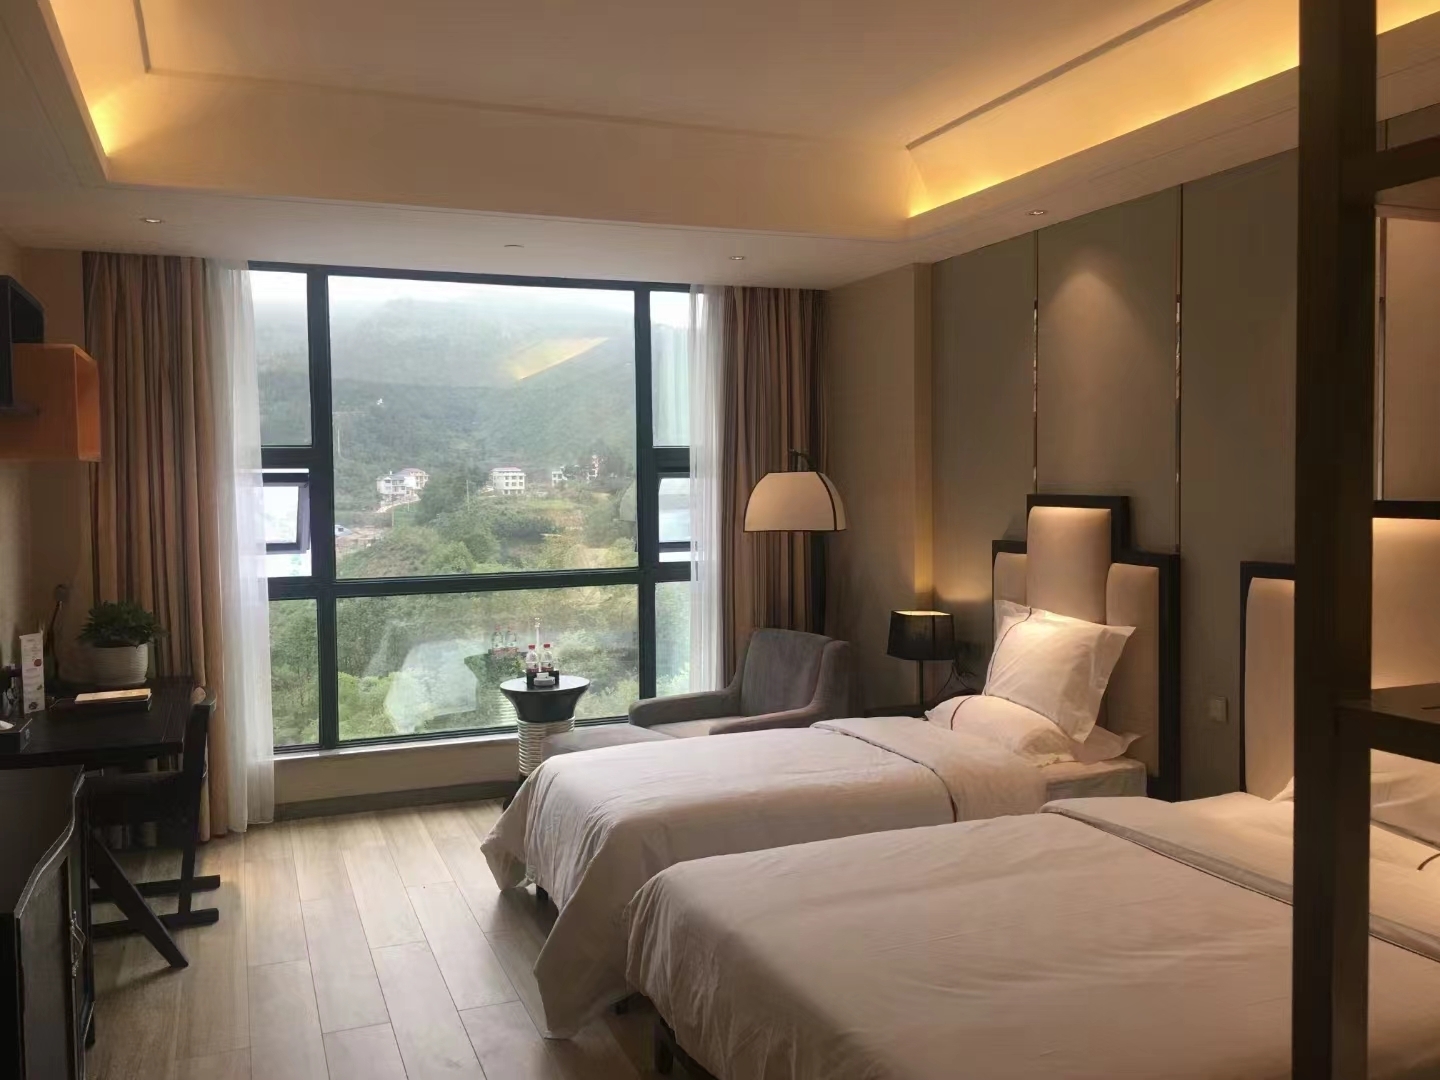 从深圳一路狂飙去新晃，累得半死，但是一入住酒店厅就觉得看起来很舒适，酒店还有免费的停车场，十三楼还有